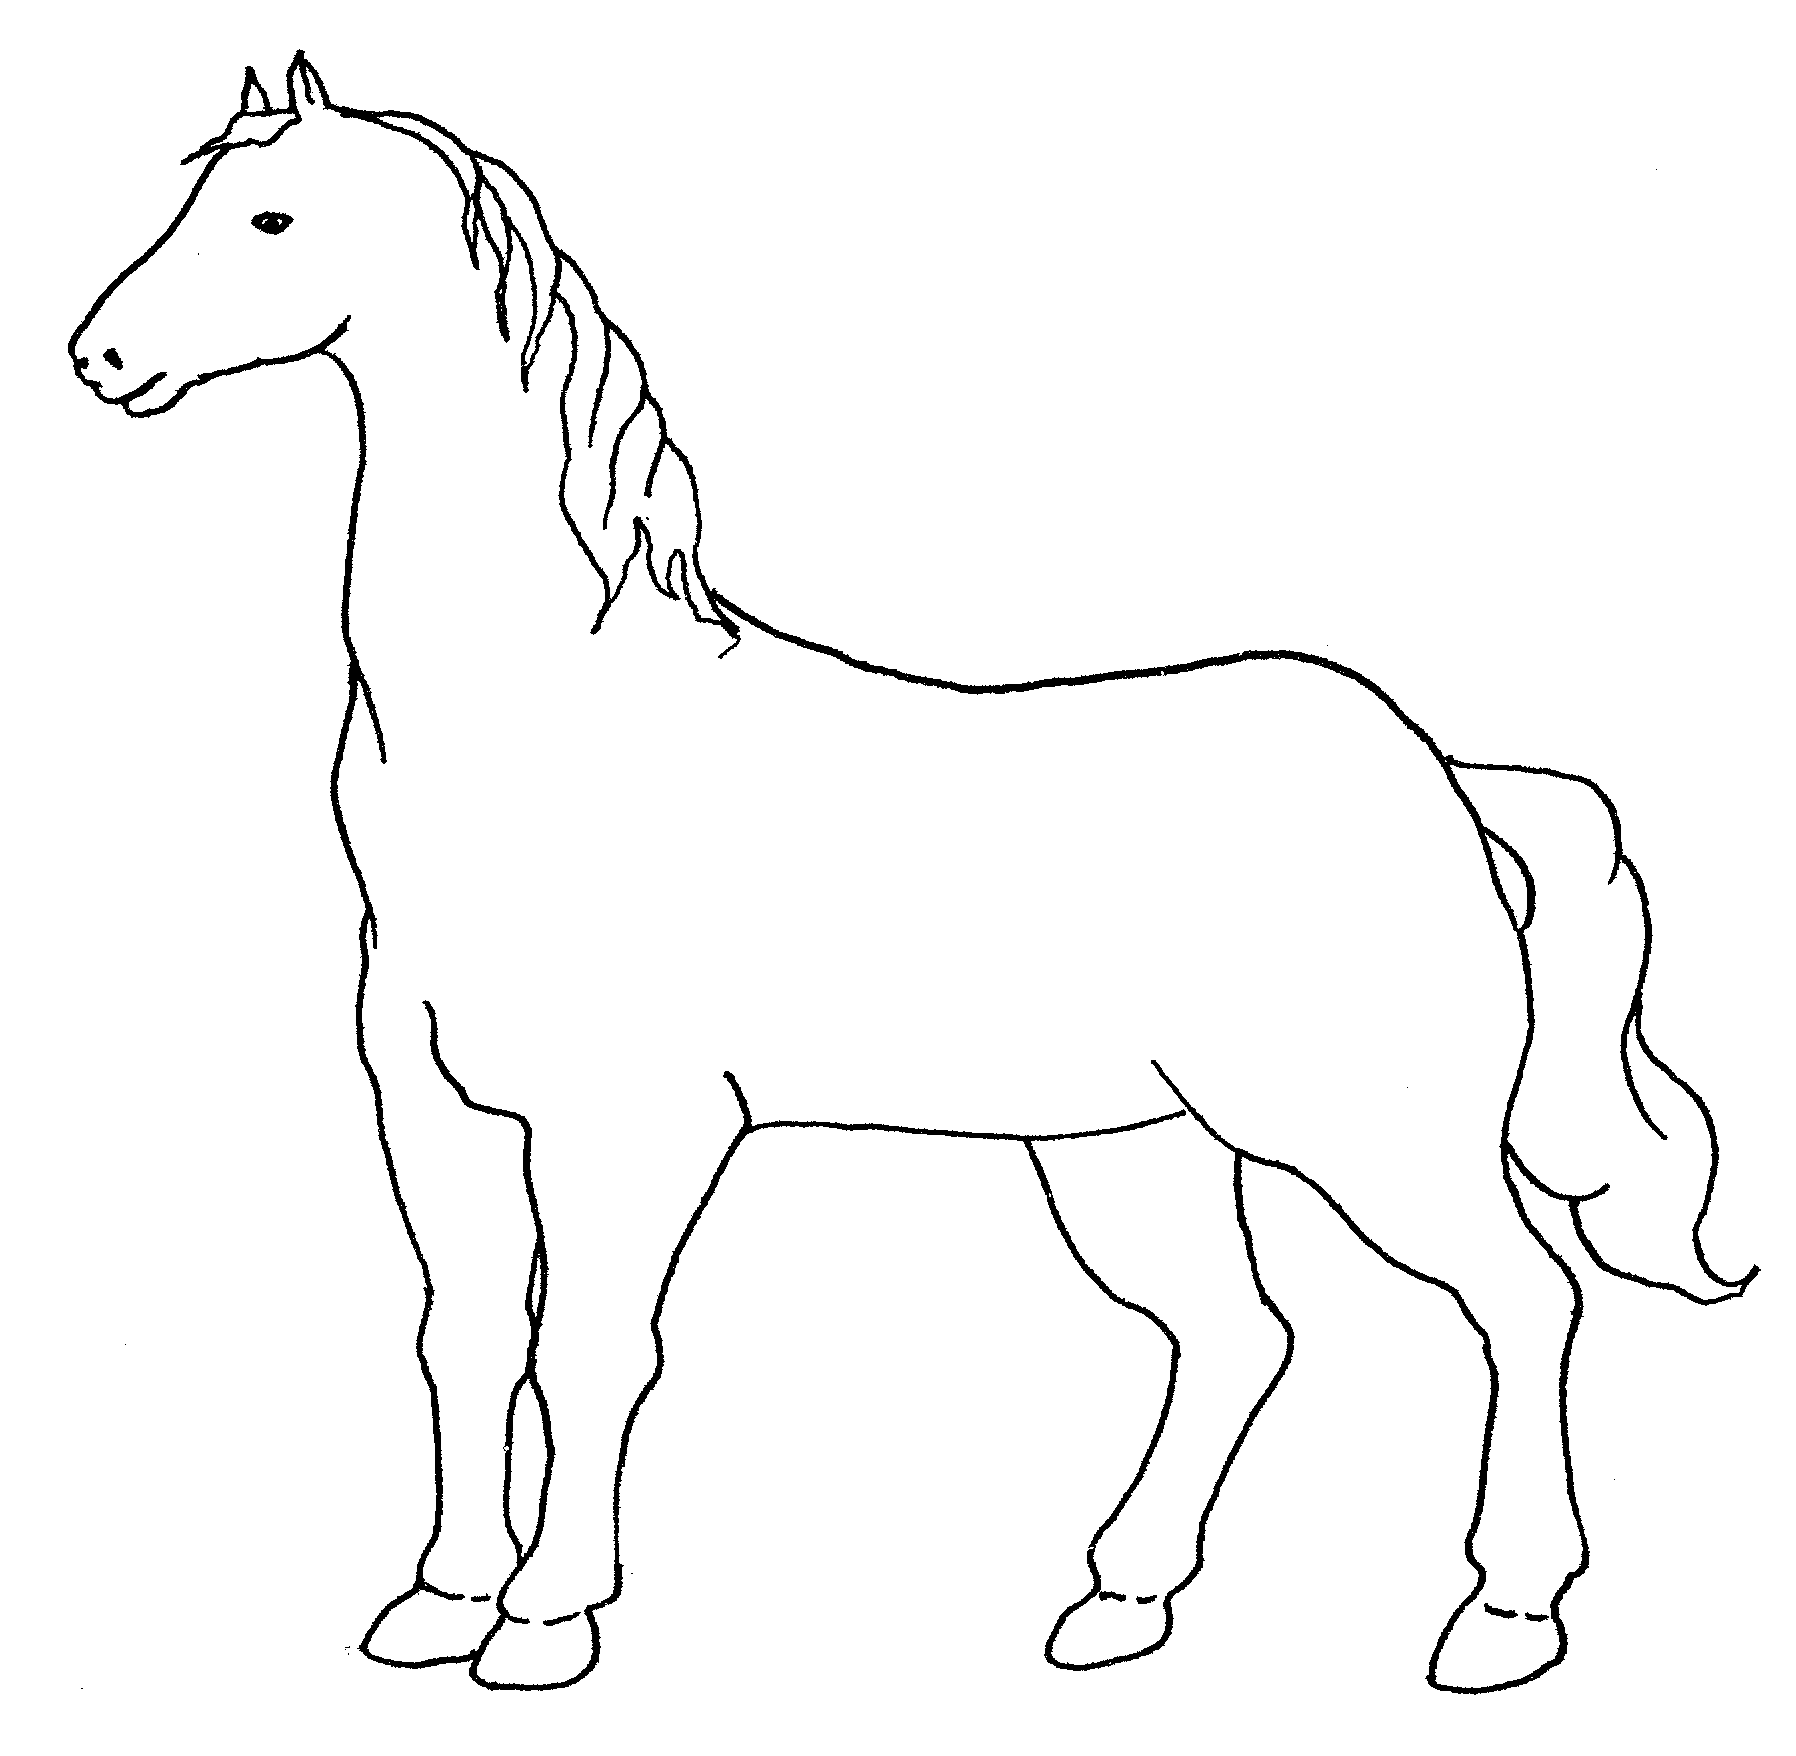 Semplice disegno di un cavallo da colorare